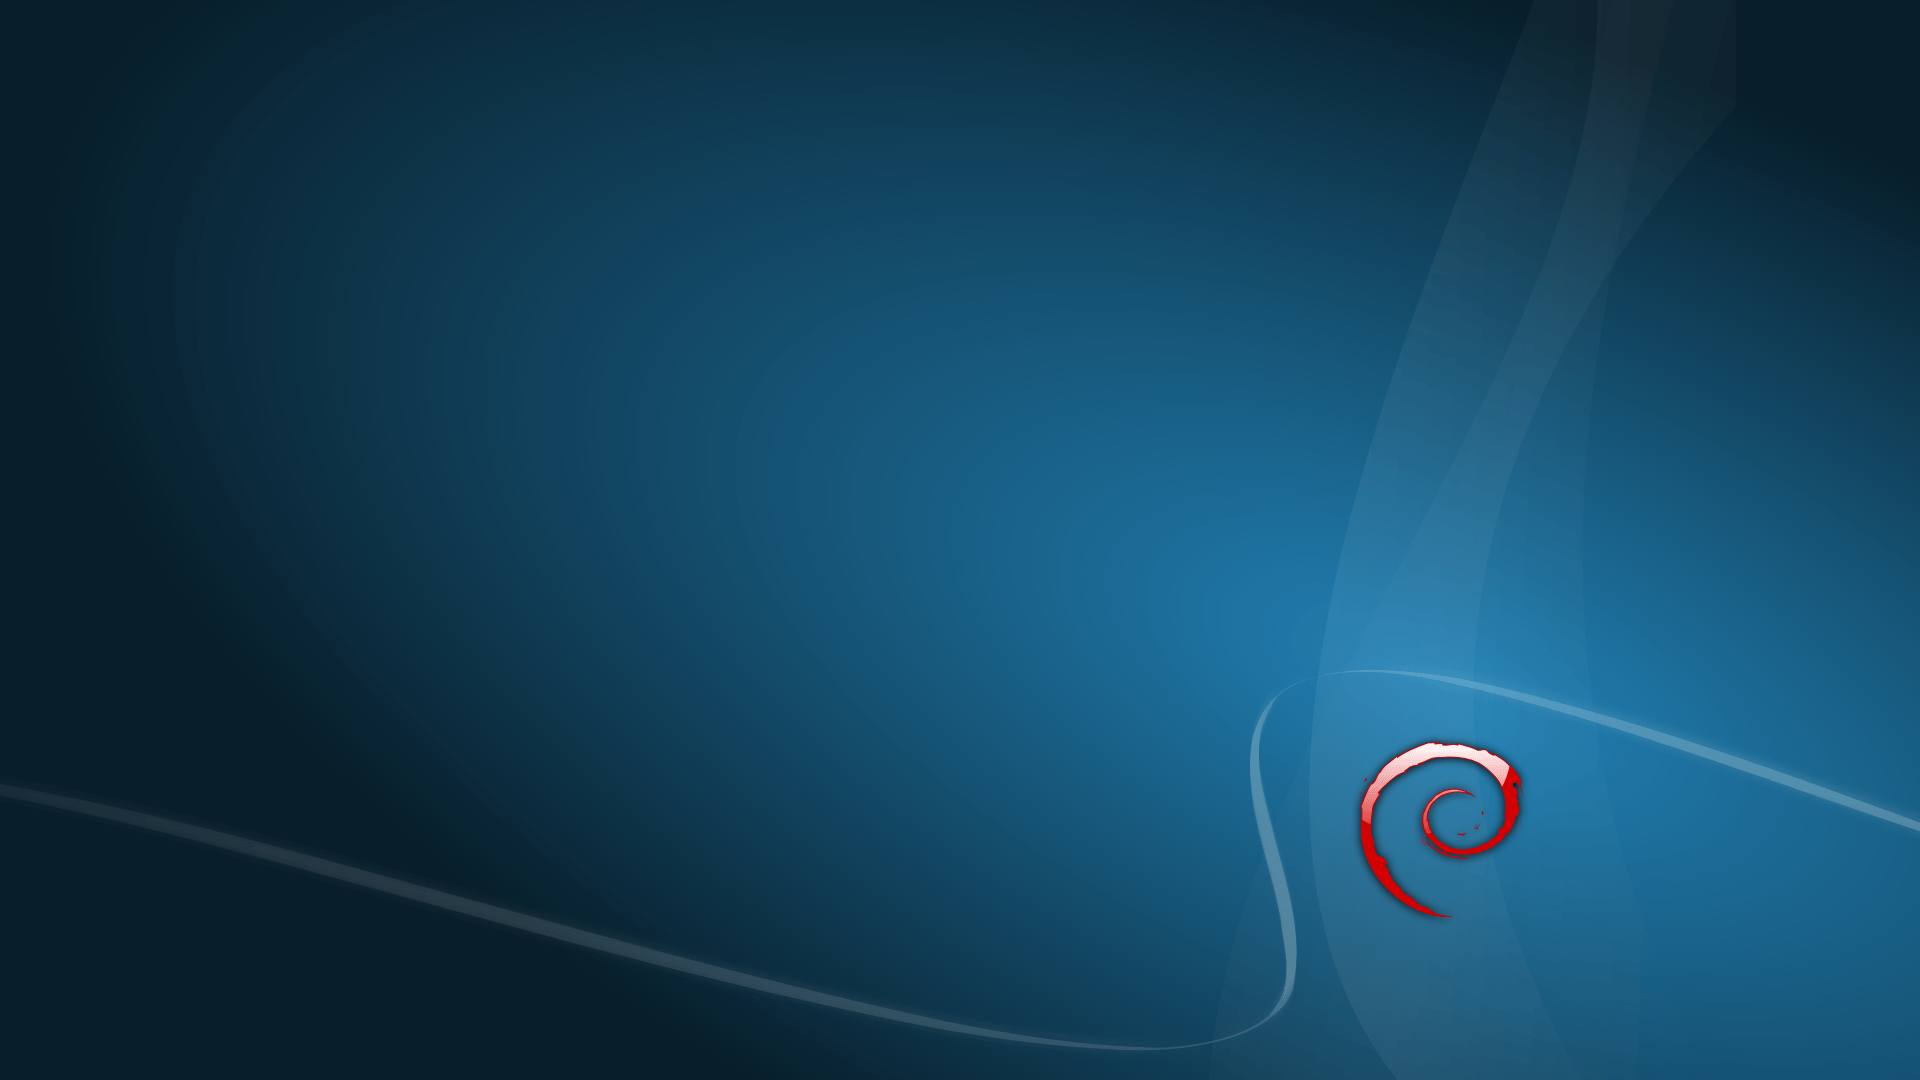 Debian Background For Your Desktop